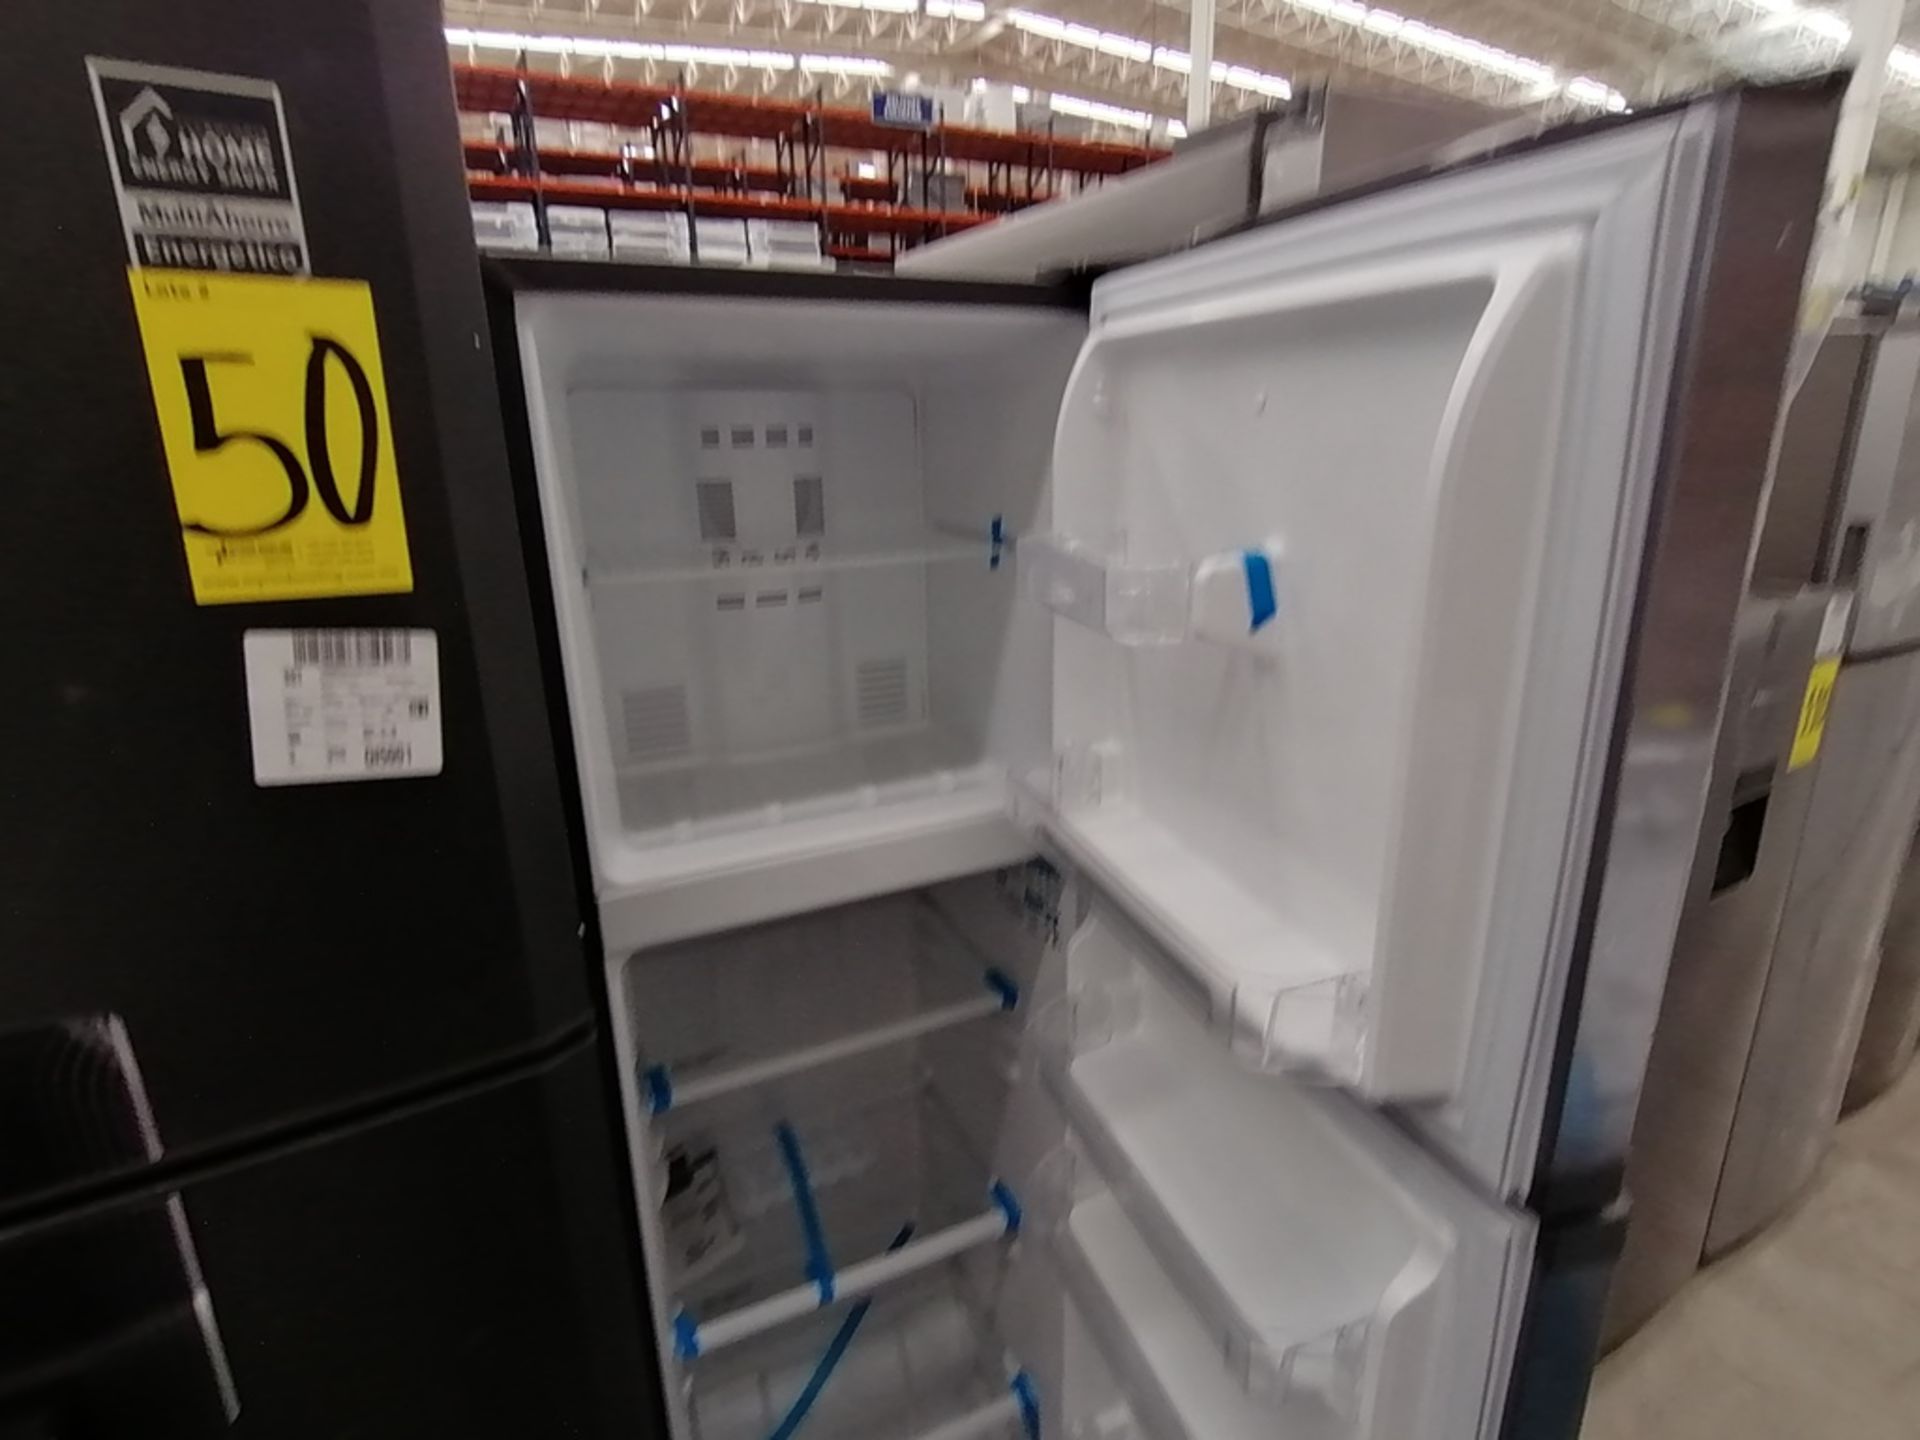 Lote de 2 refrigeradores incluye: 1 Refrigerador, Marca Mabe, Modelo RMA1025VMX, Serie 2111B618024, - Image 11 of 15